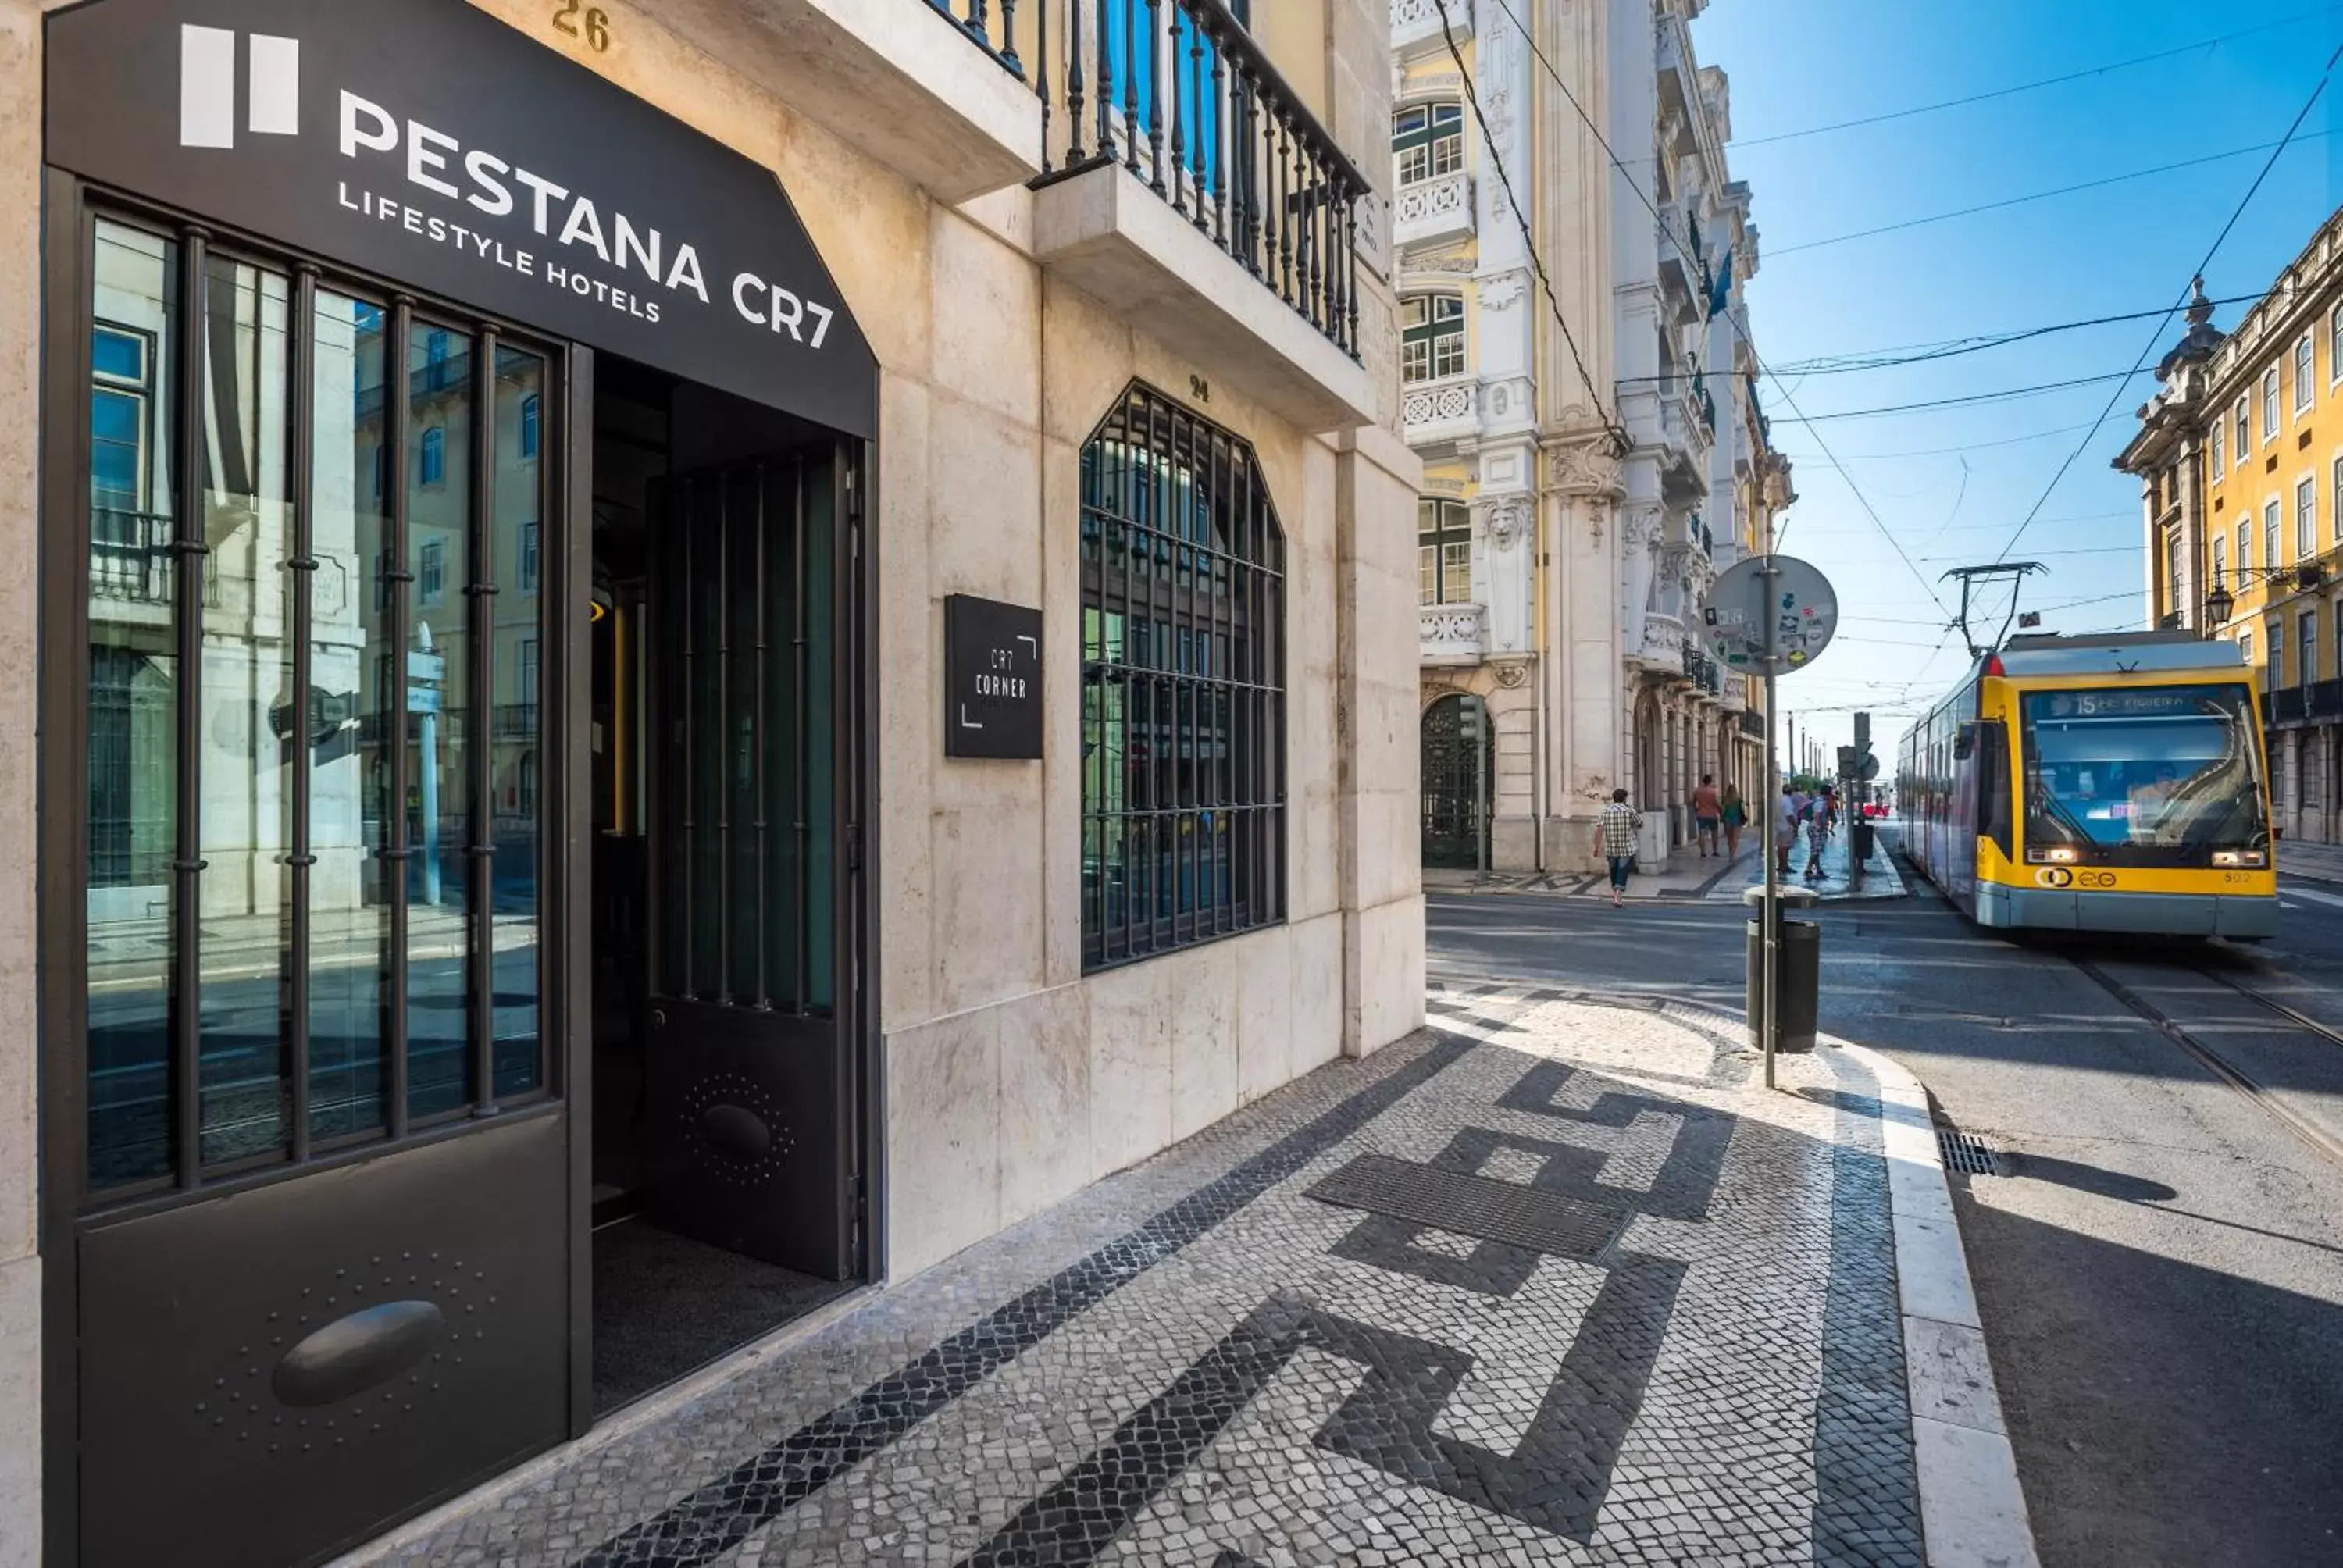 Property building, Facade/Entrance in Pestana CR7 Lisboa